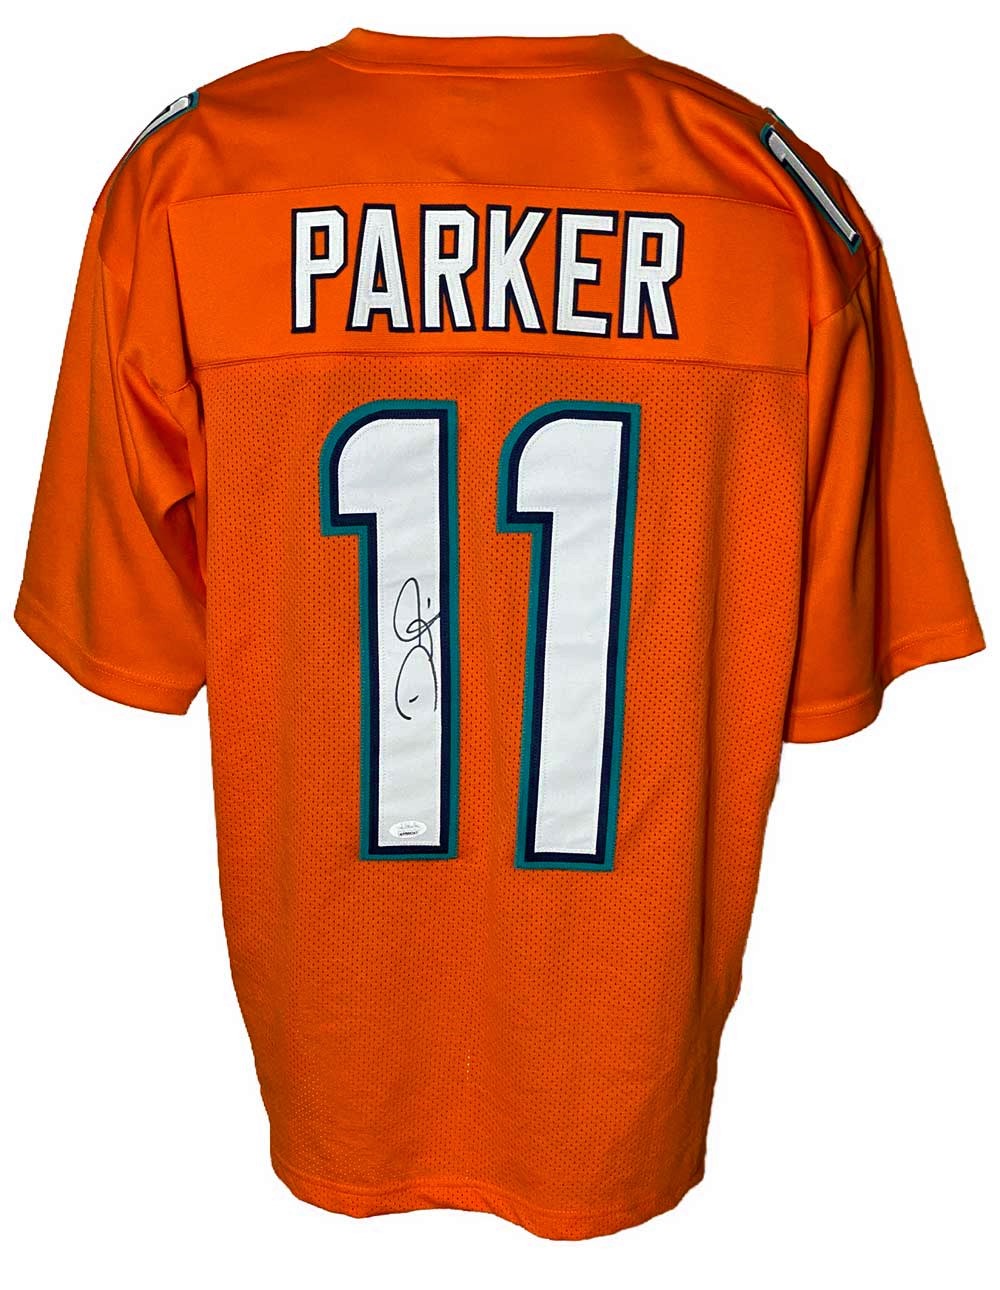 Miami Dolphins Devante Parker Autographed Pro Style Orange Jersey